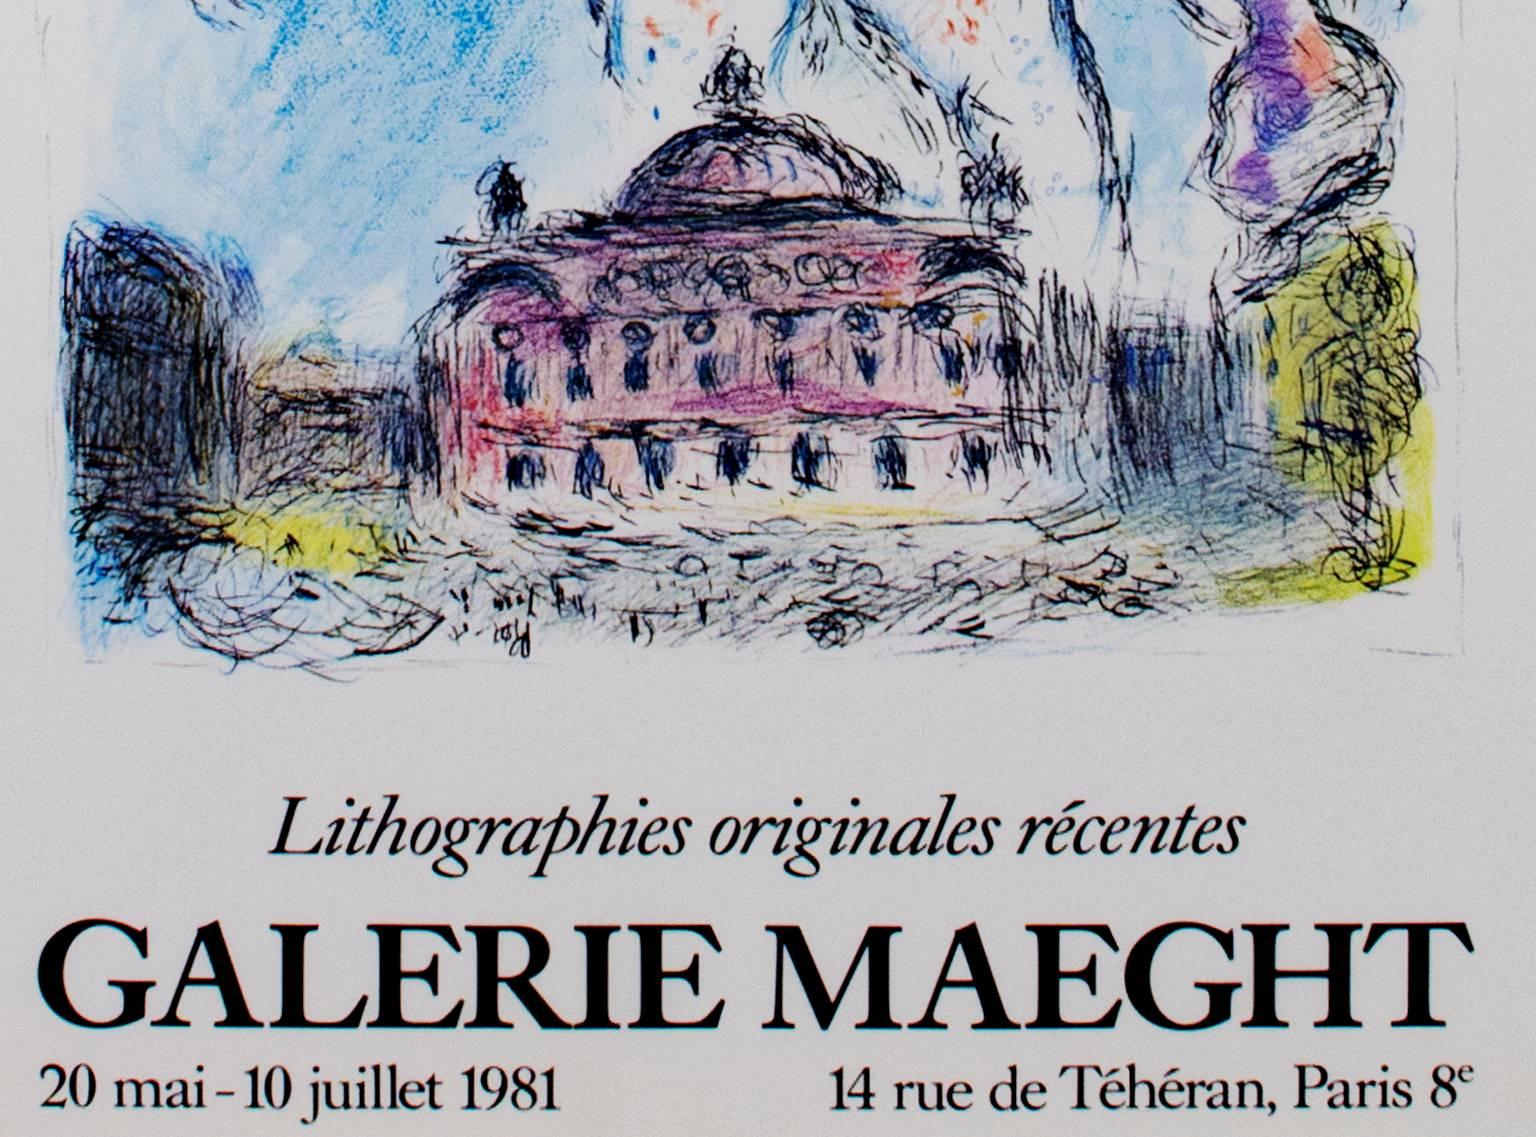 Affiche de la « Galerie Maeght », lithographie offset d'après une peinture de Marc Chagall - Print de (after) Marc Chagall